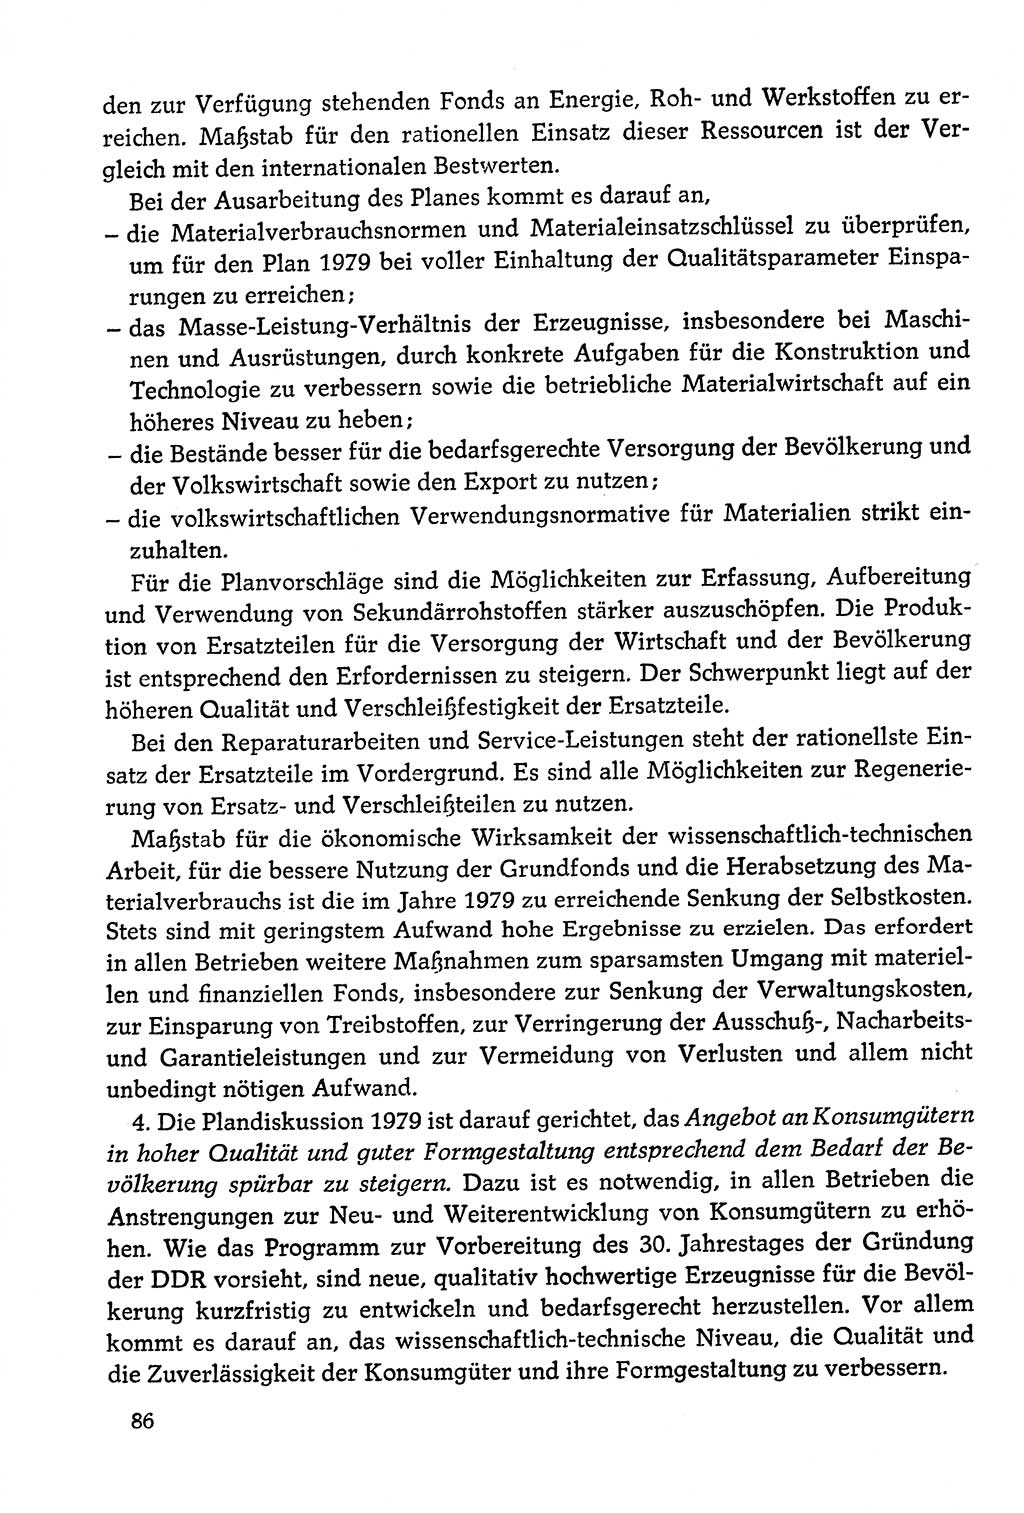 Dokumente der Sozialistischen Einheitspartei Deutschlands (SED) [Deutsche Demokratische Republik (DDR)] 1978-1979, Seite 86 (Dok. SED DDR 1978-1979, S. 86)